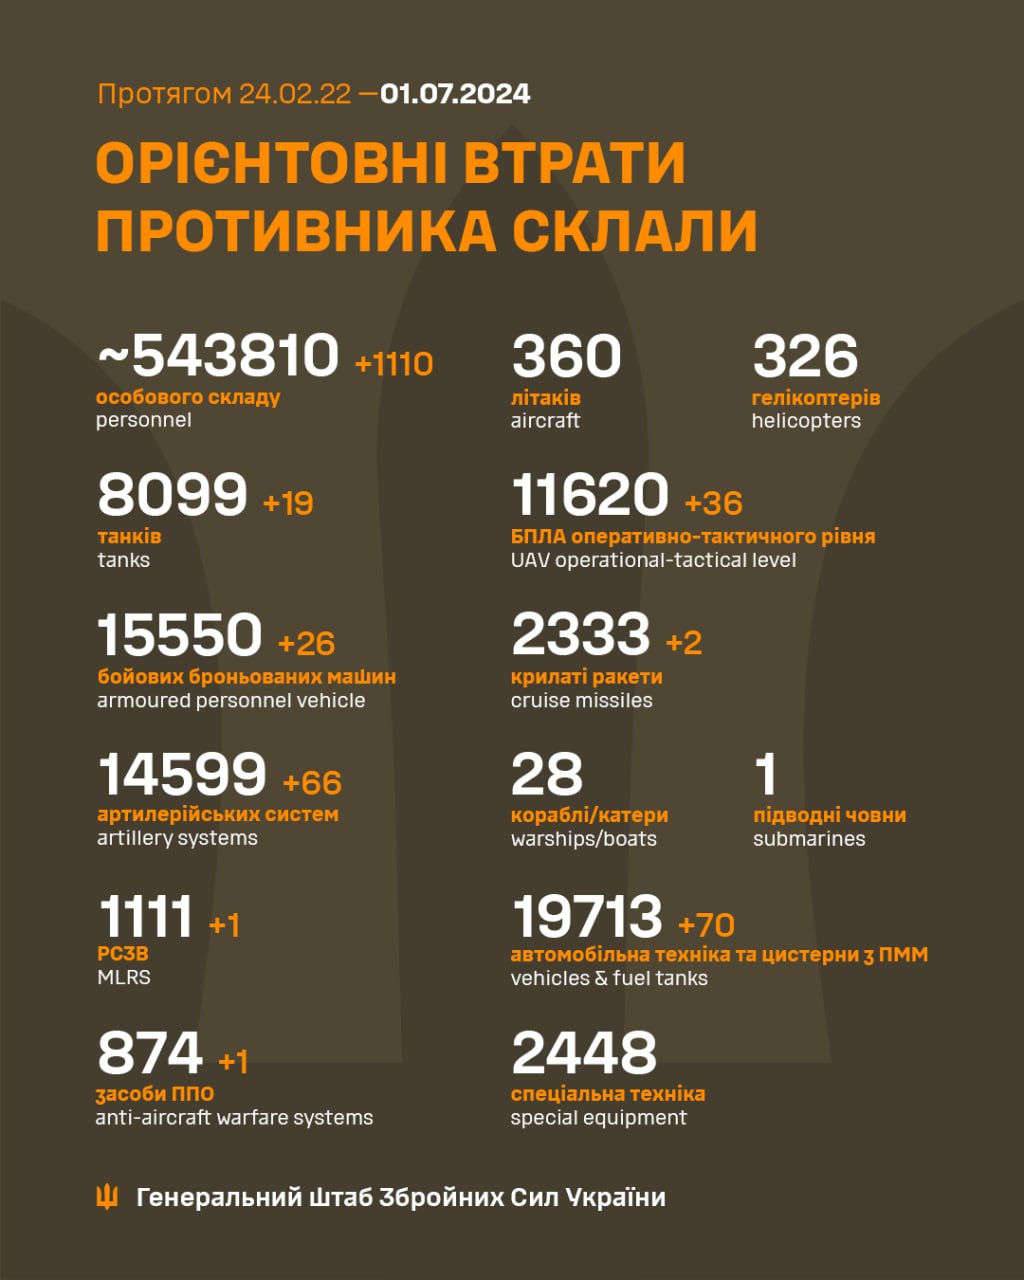 Еще 1110 захватчиков и 66 артсистем. Генштаб обновил потери РФ в Украине